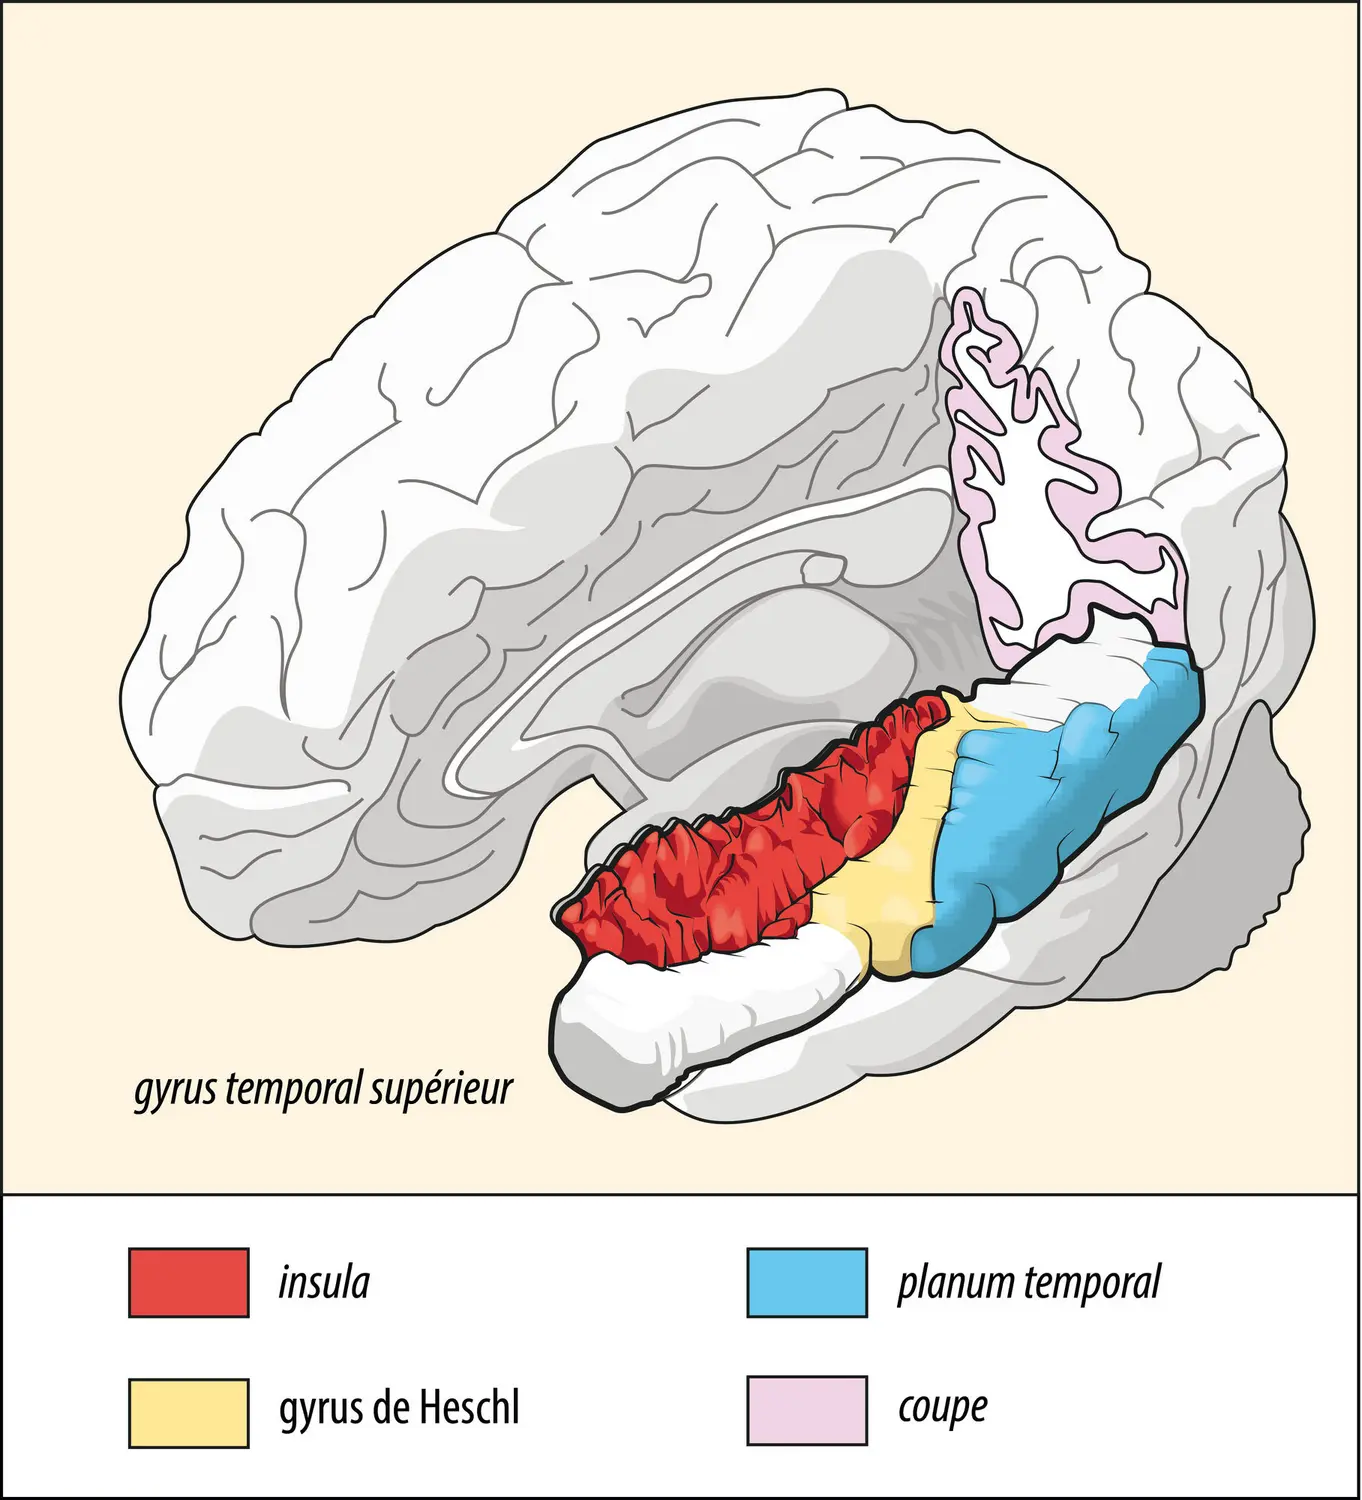 Les aires du cortex cérébral impliquées dans la perception de la parole